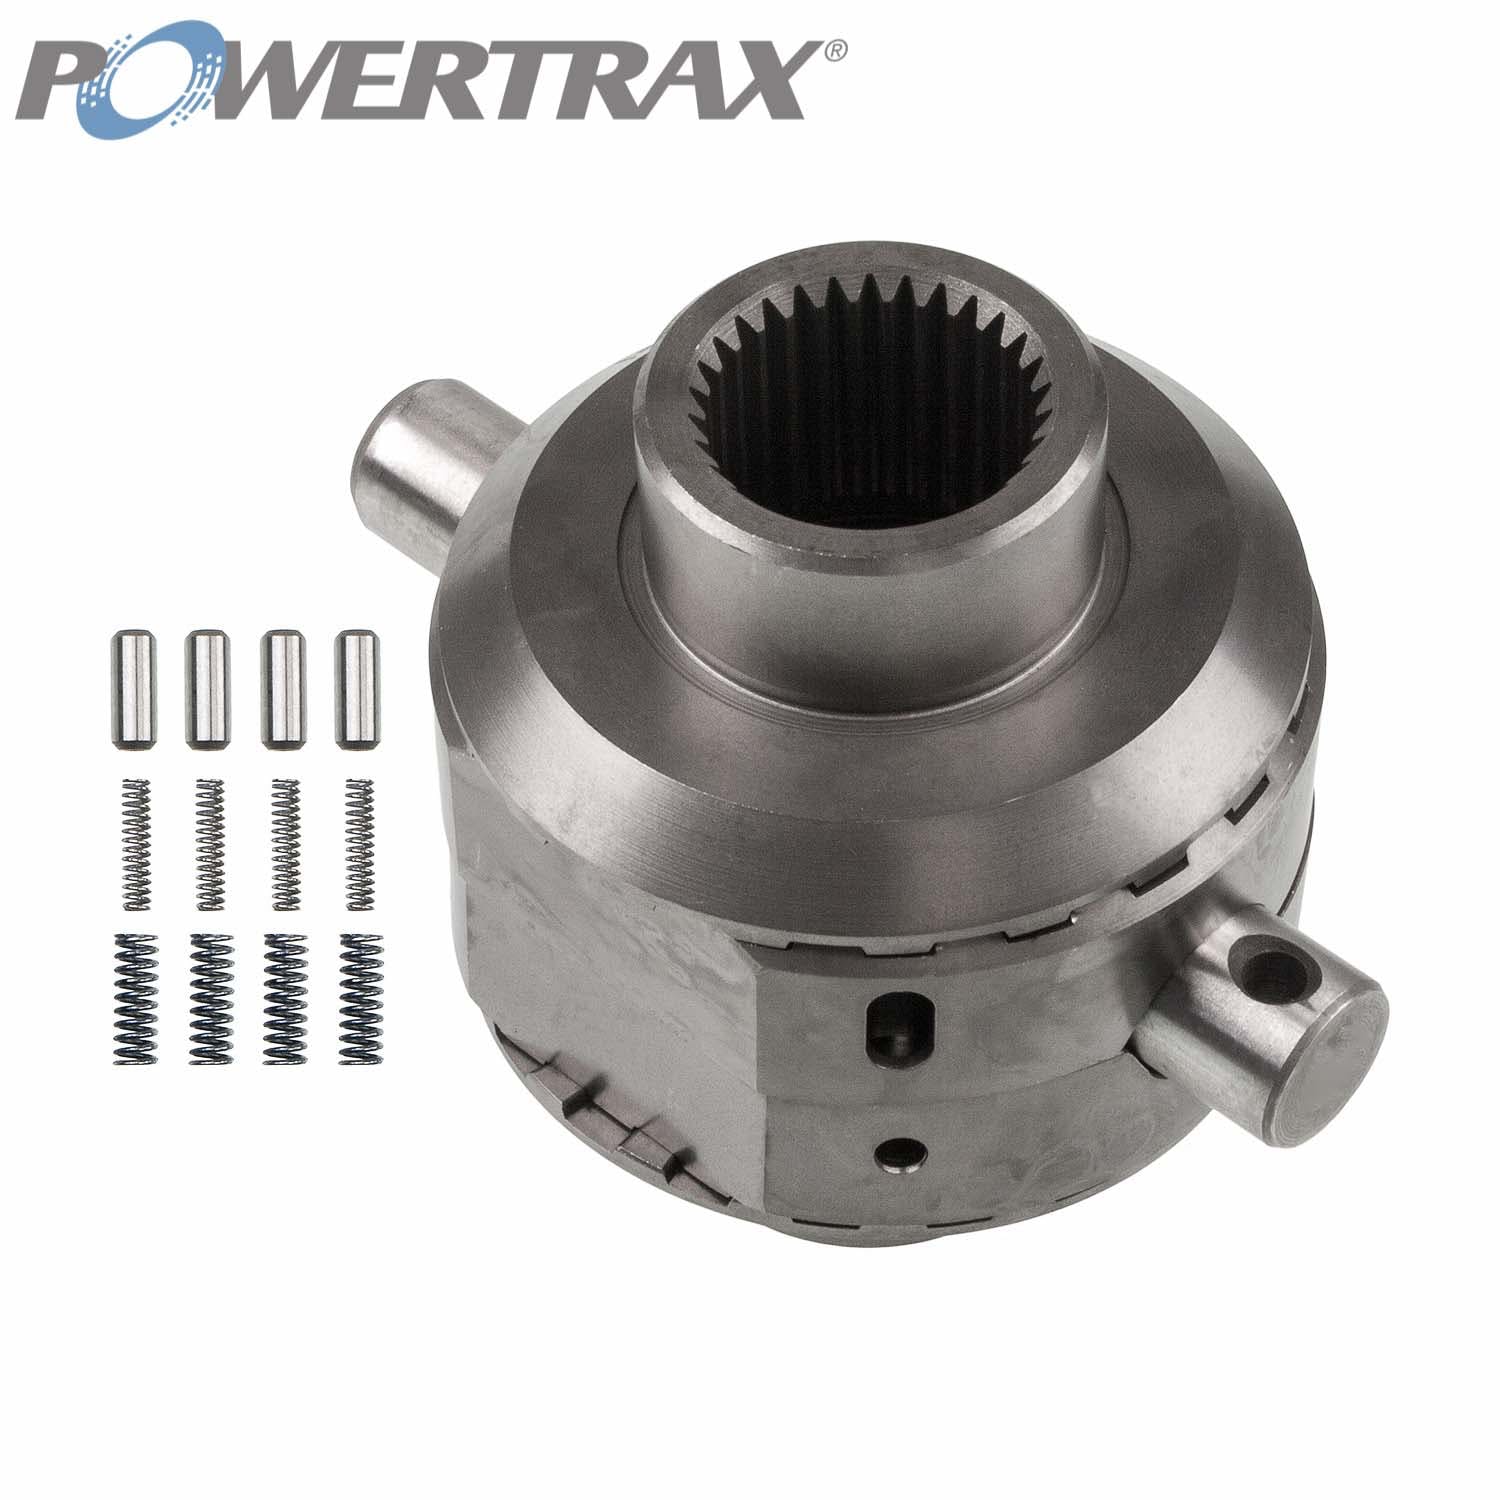 PowerTrax 2410-LR Lock Right Locker